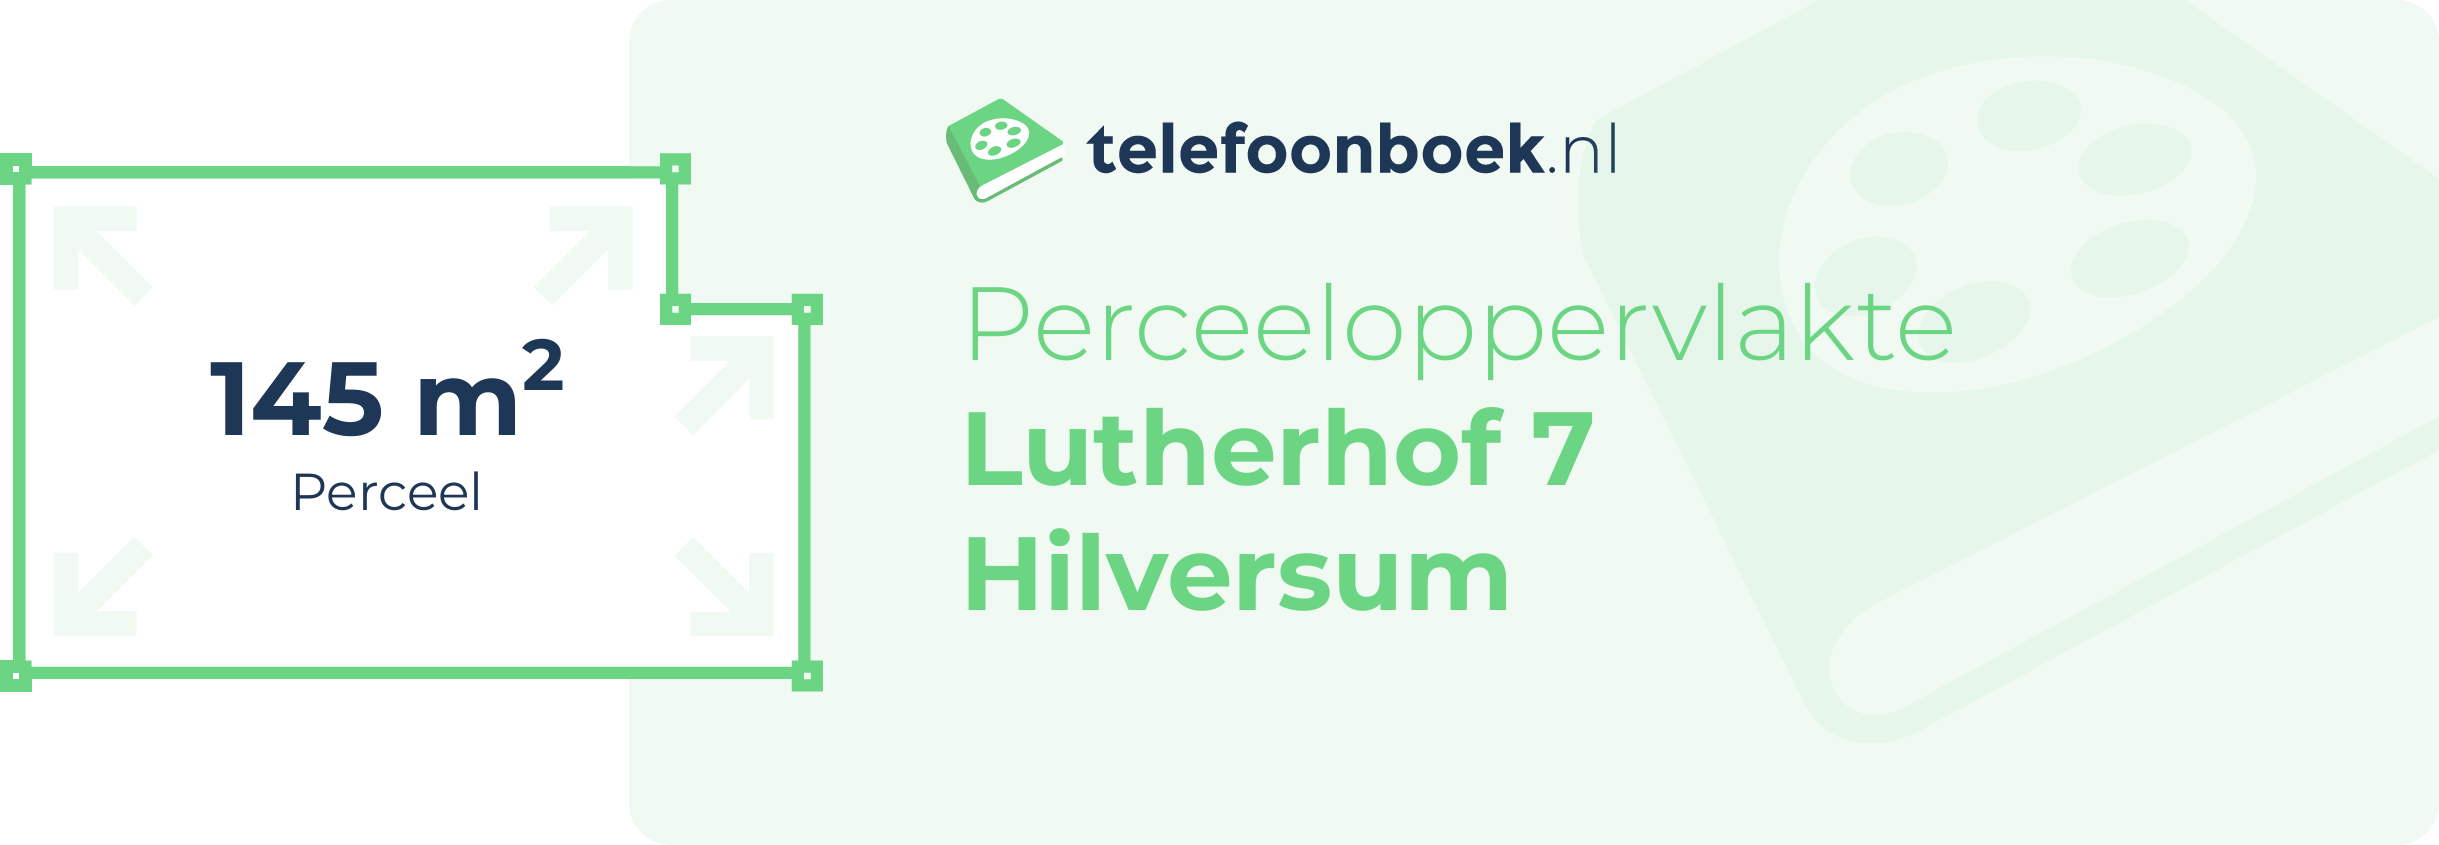 Perceeloppervlakte Lutherhof 7 Hilversum